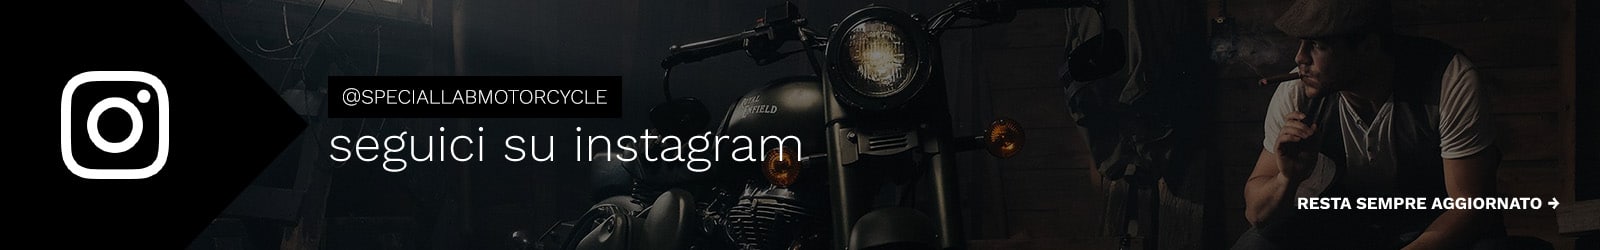 Special Lab Motorcycle - seguici su instagram